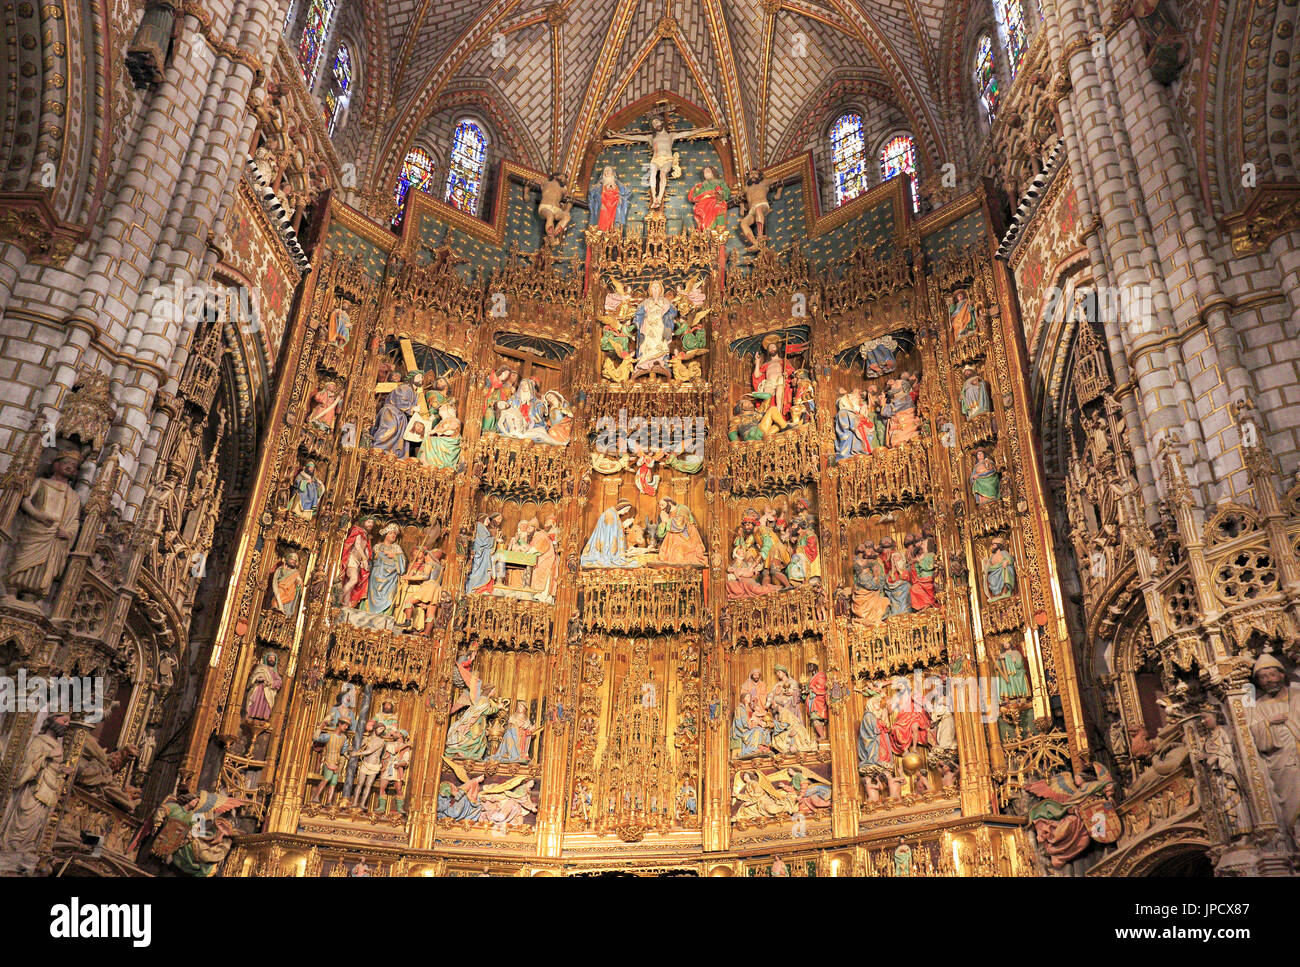 Der Hauptaltar im Inneren der Kathedrale der Heiligen Maria von Toledo, eine römisch-katholische 13. Jahrhundert hohe gotische UNESCO Kathedrale Primas. Stockfoto